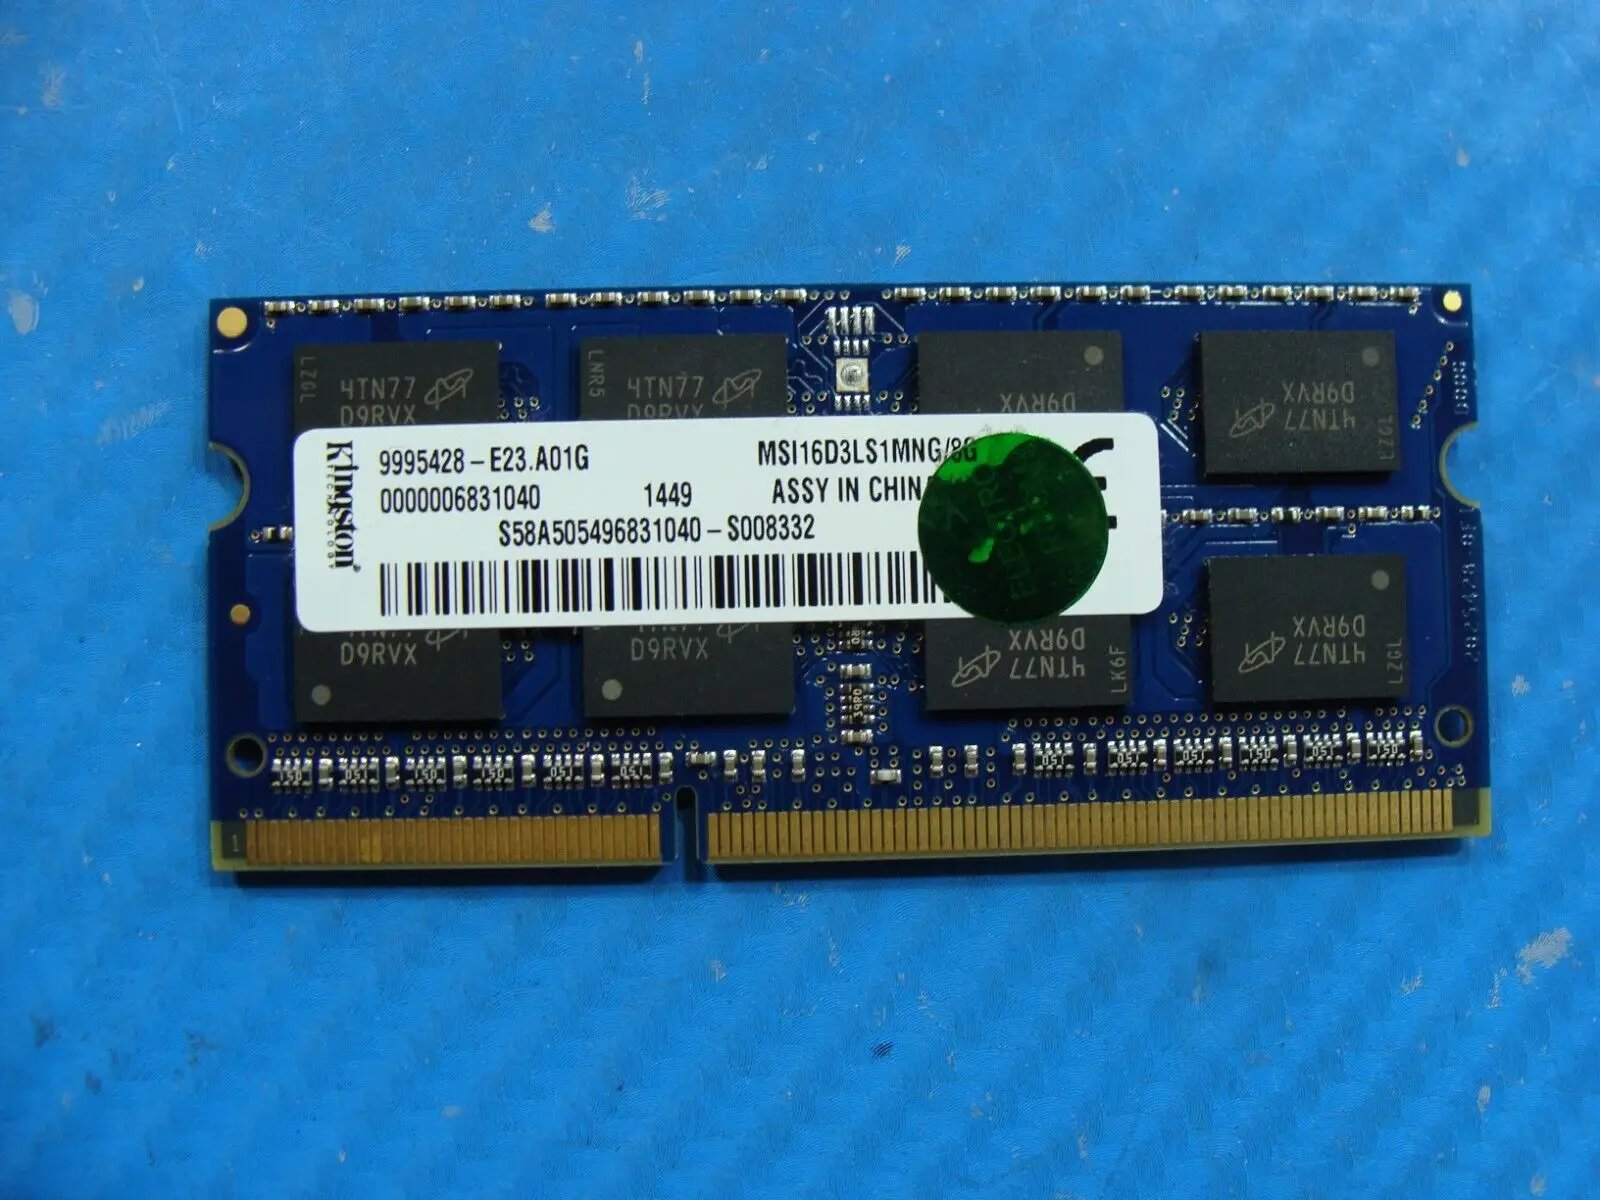 MSI GS70 2QE Kingston 8GB Memory RAM SO-DIMM MSI16D3LS1MNG/8G 9995428-E23.A01G